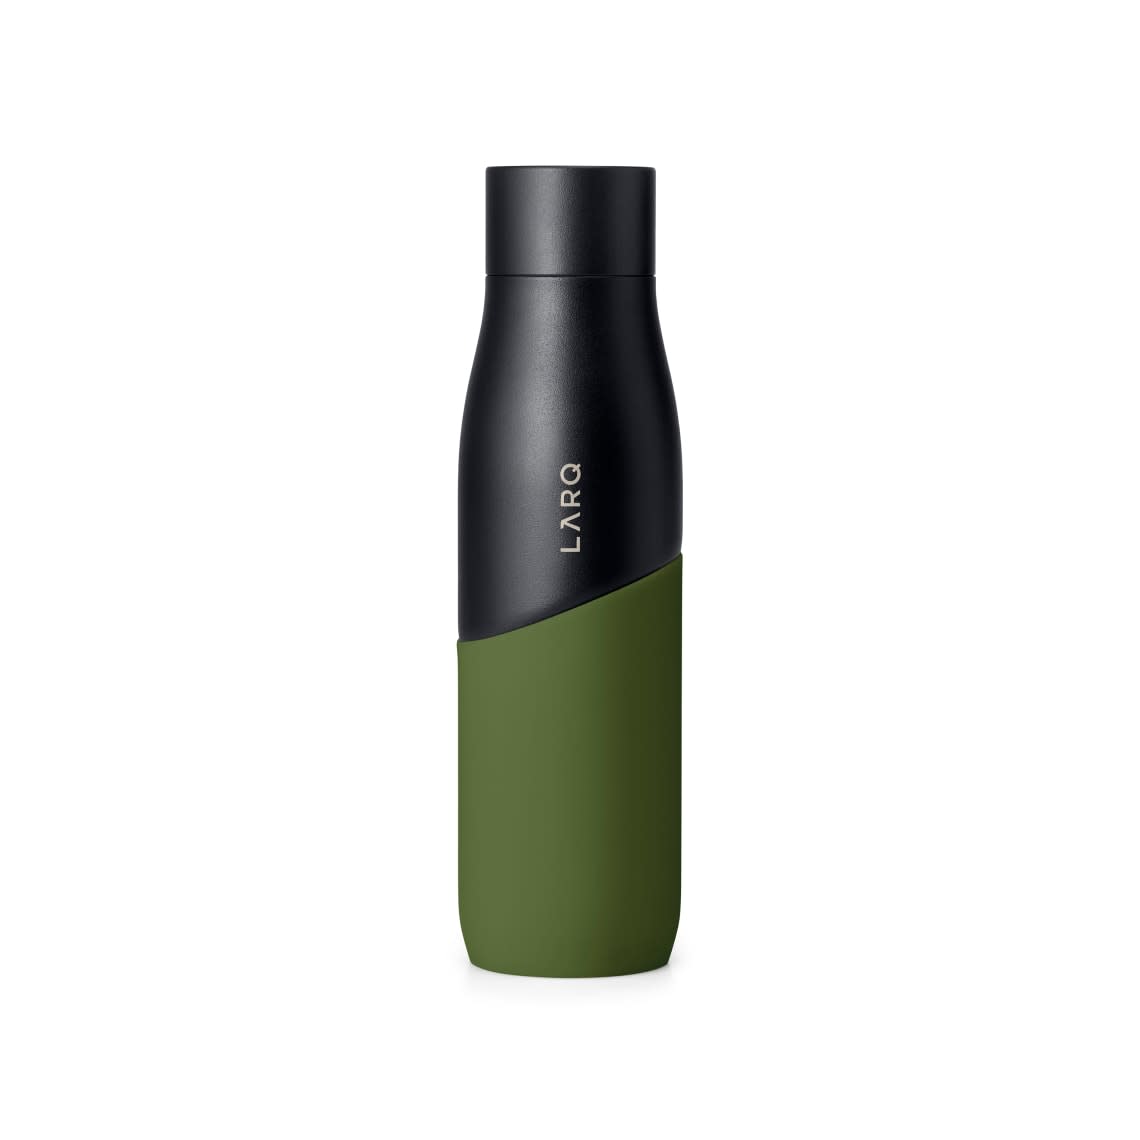 LARQ Bottle Movement PureVis™ in  Black Pine Color